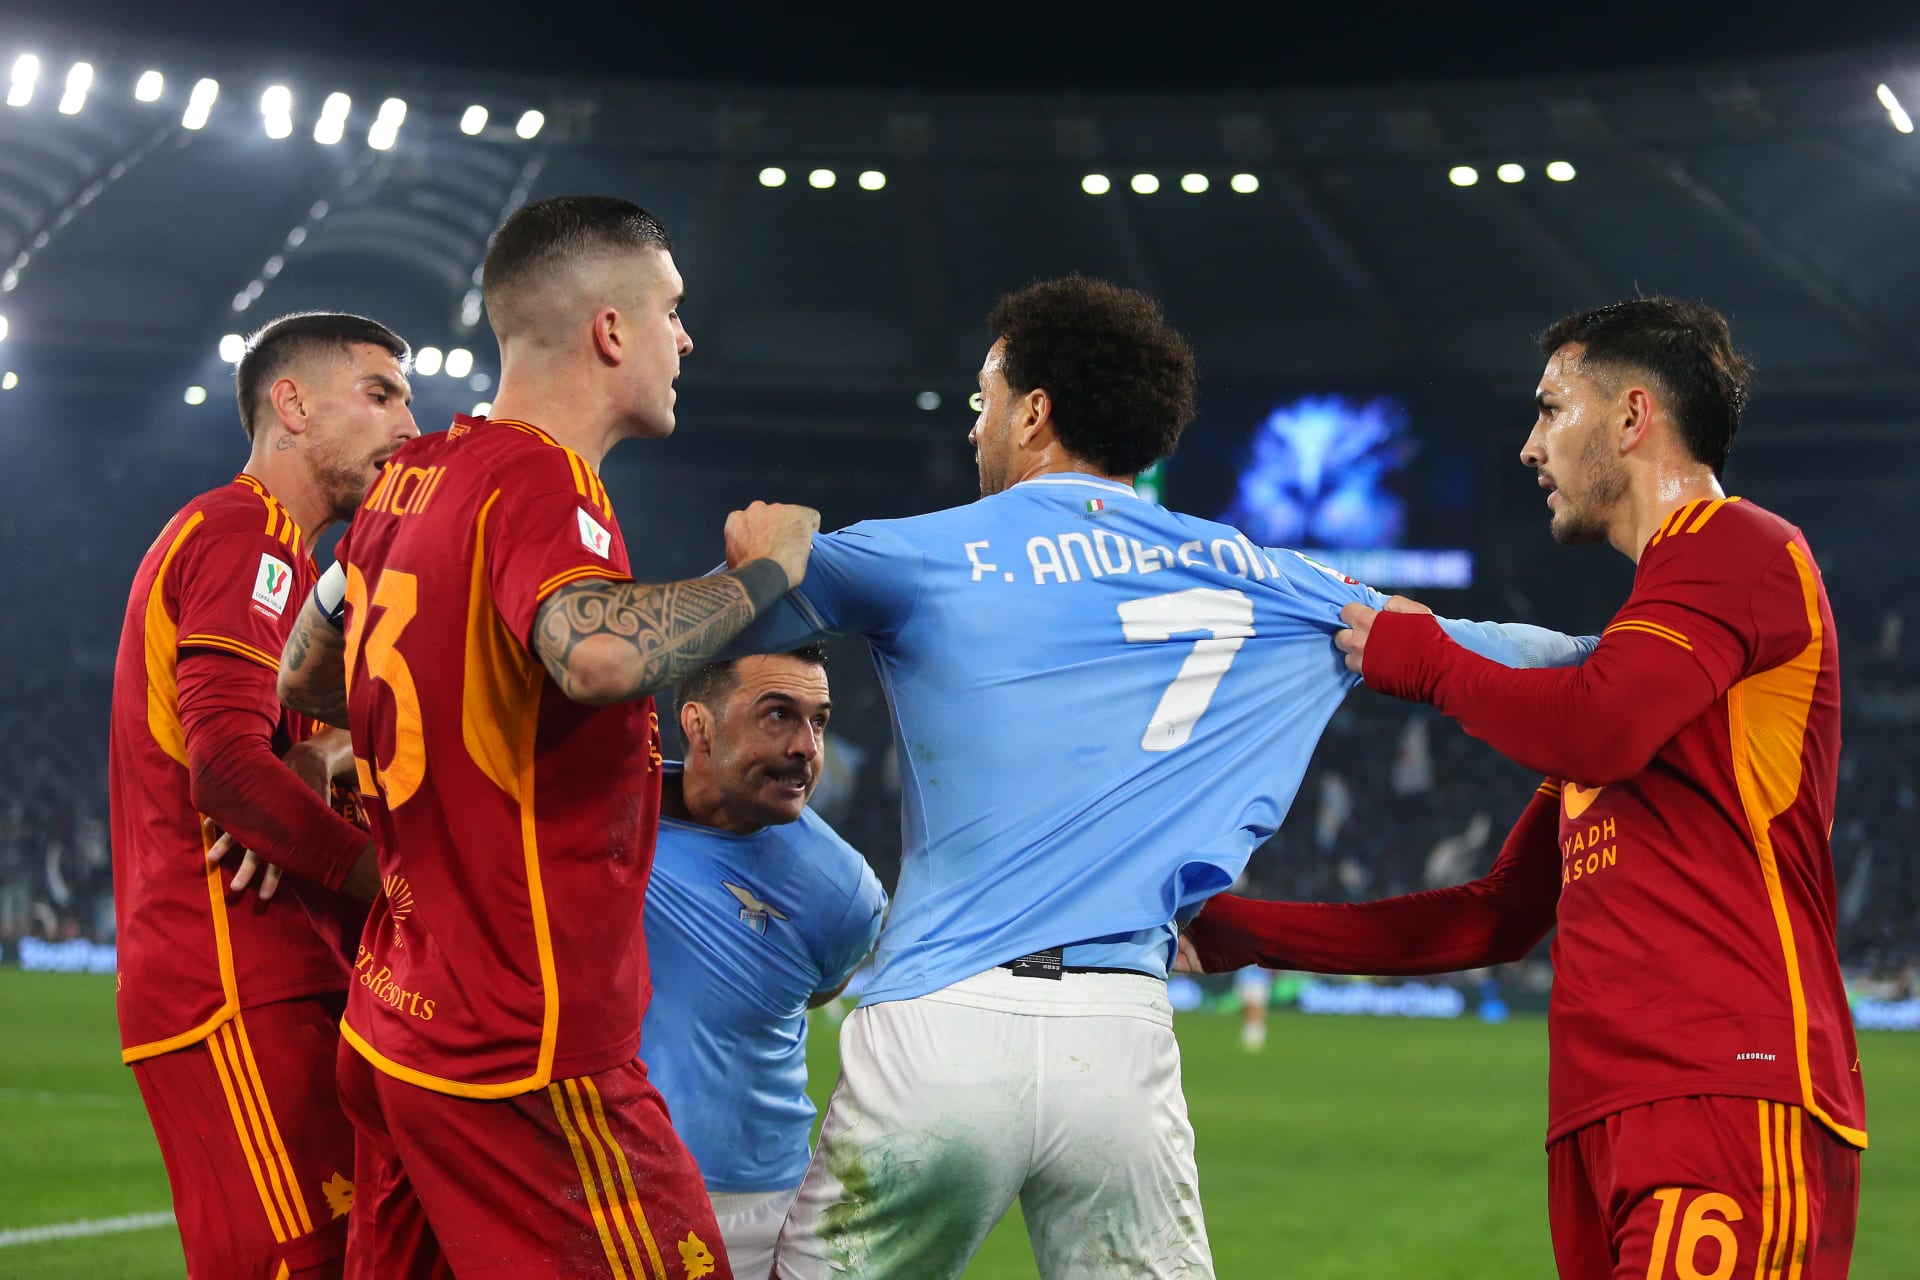 فوضى في المدرجات واشتباك بالأيدي بين اللاعبين خلال مباراة روما ولاتسيو